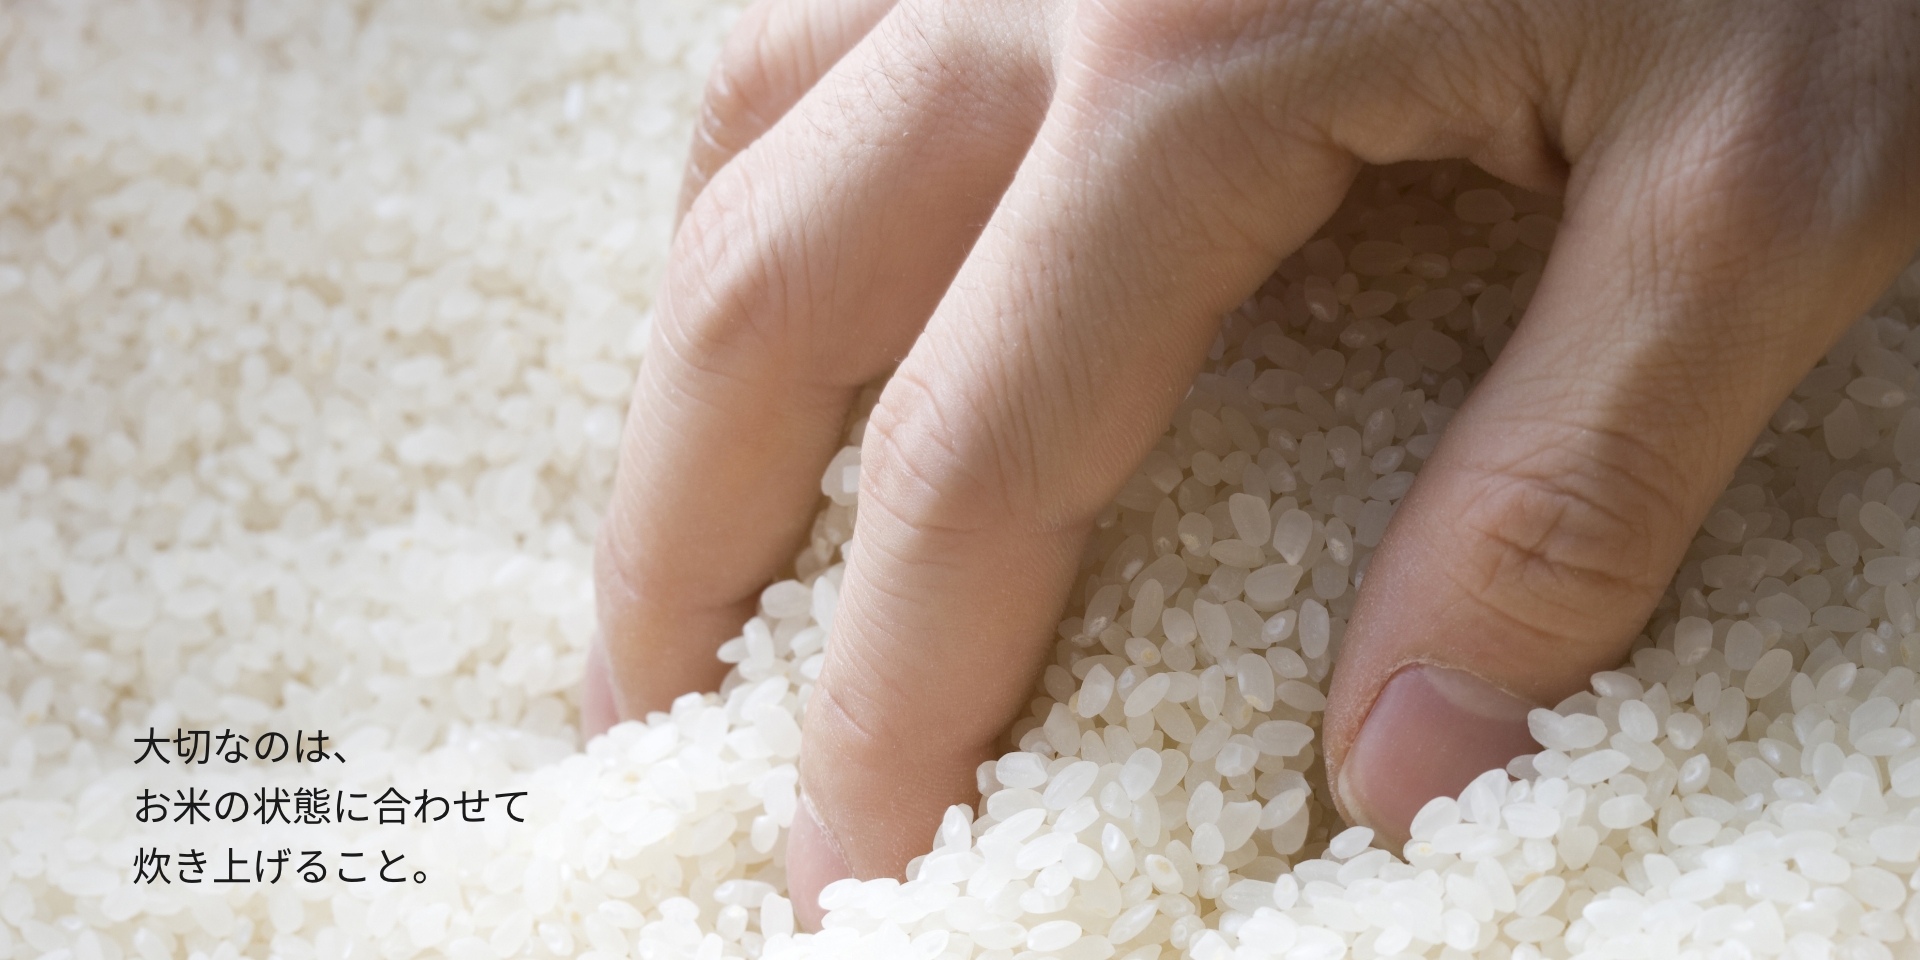 お米を触っている画像です。大切なのは、お米の状態に合わせて炊き上げること。